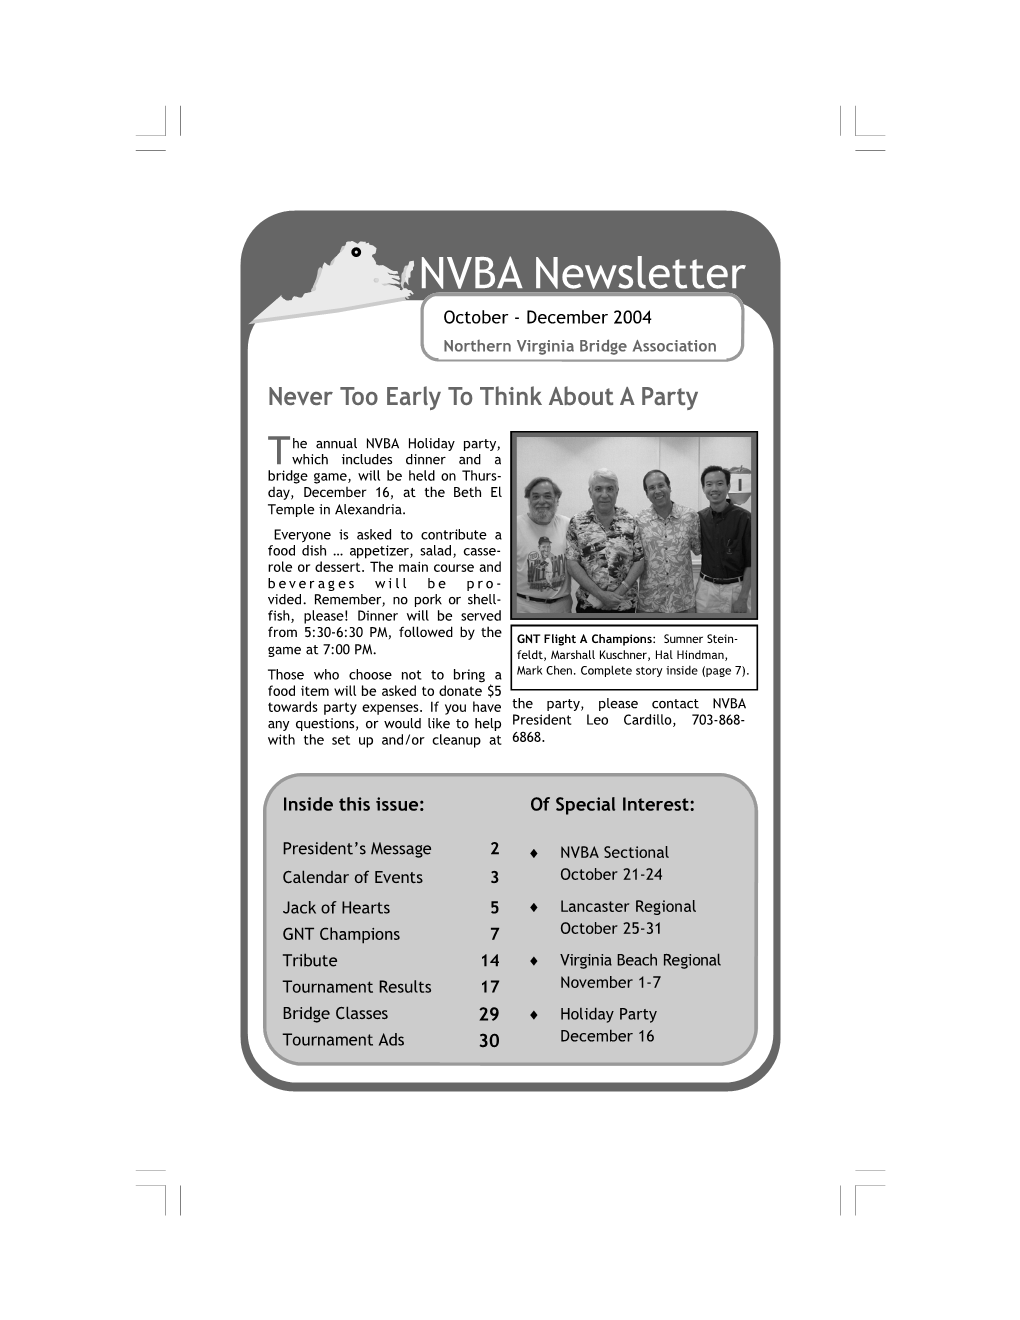 NVBA Newsletter Oct-Dec